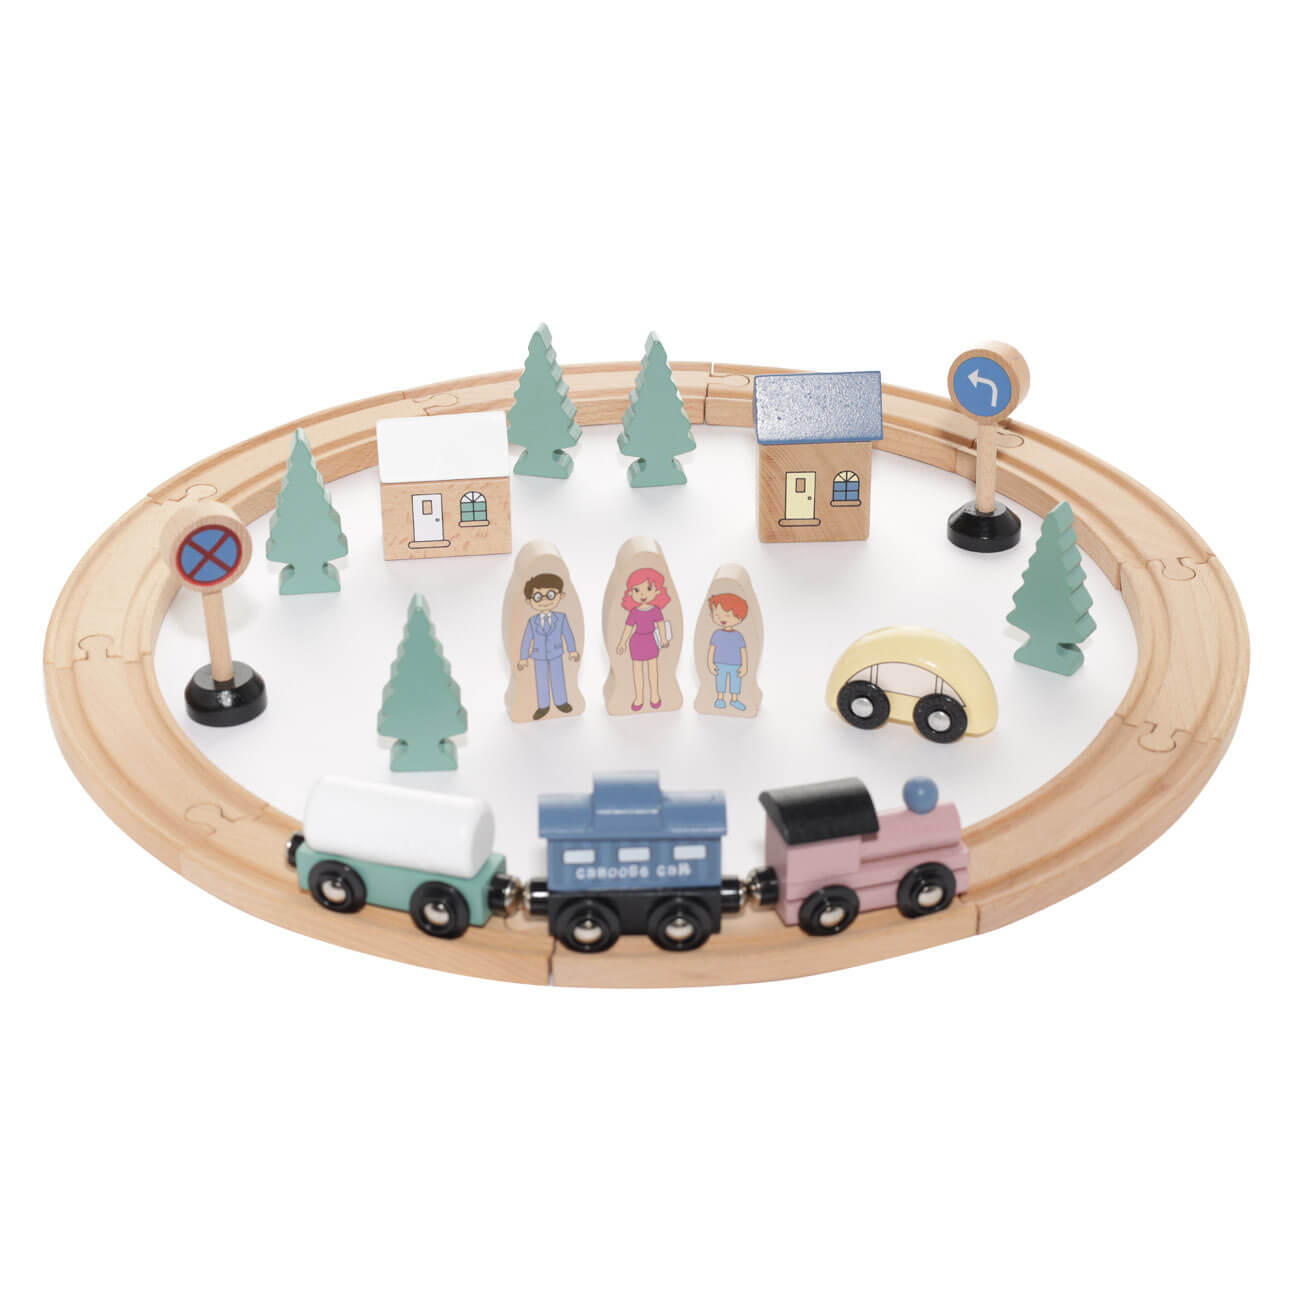 Железная дорога игрушечная, 28 см, дерево, Город, Game железная дорога зверопоезд